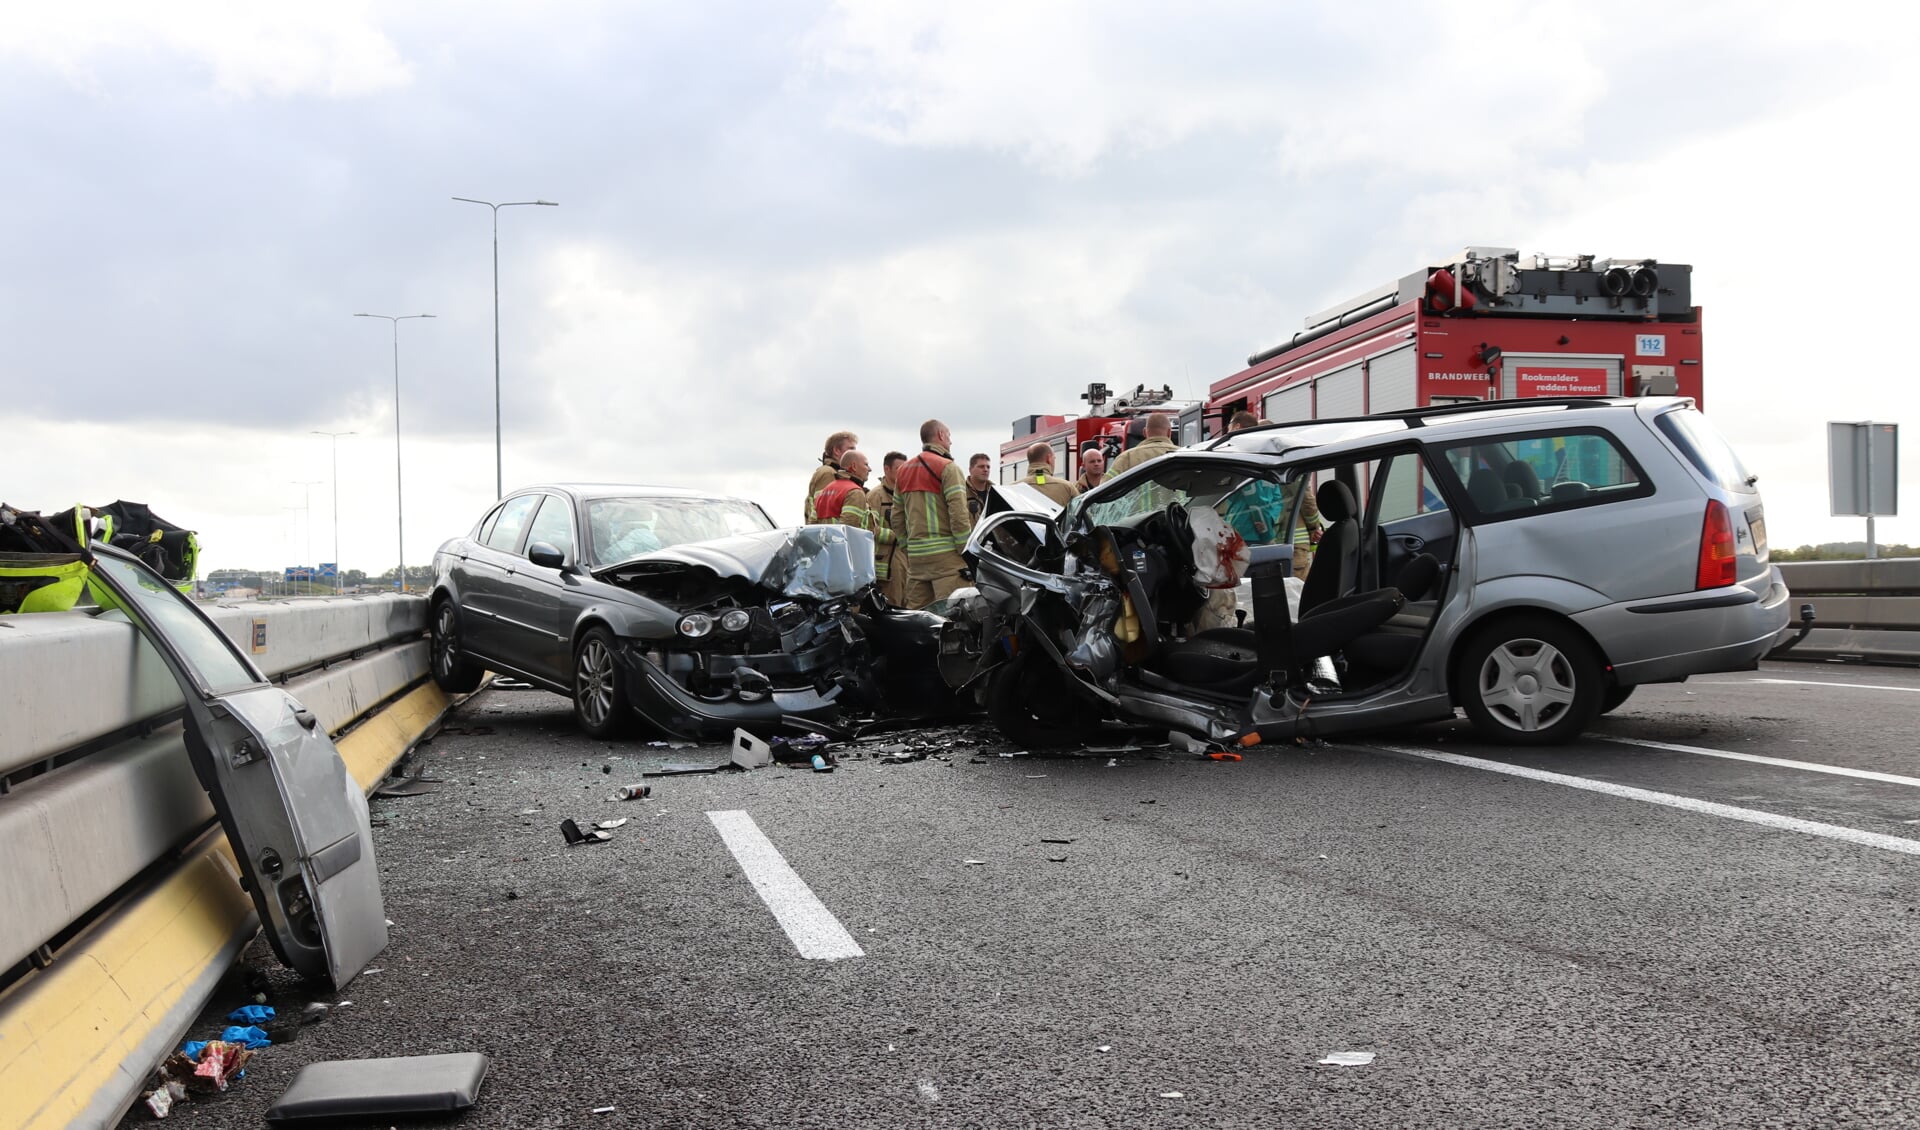 De N209 is regelmatig toneel van ernstige ongevallen, zoals hierboven tijdens een frontale botsing op 3 augustus. De raad wil een nieuw onderzoek naar de veiligheid van de weg. (Foto: Spa Media)